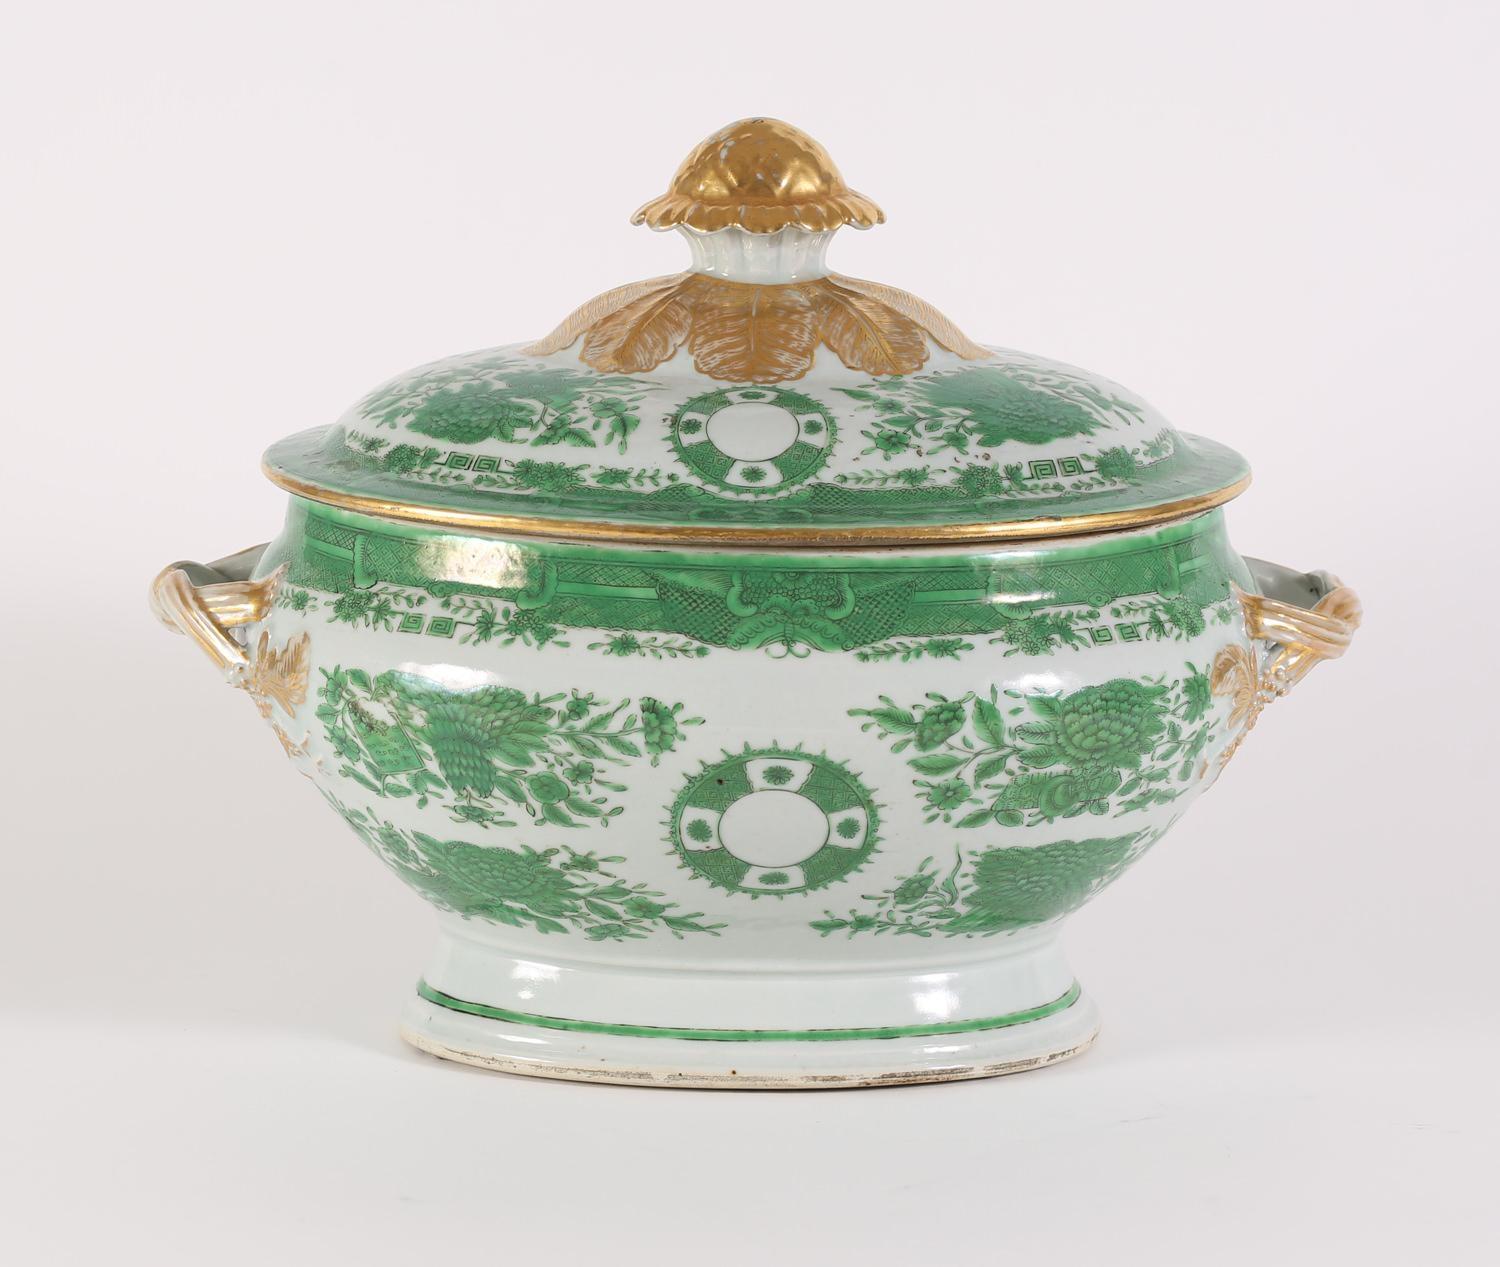 Soupière, couvercle et sous-plat en porcelaine d'exportation chinoise à motif Fitzhugh, 18e siècle. Modèle très inhabituel et rare, magnifiquement peint à la main en émaux verts et en or 24 carats, avec des poignées en corde torsadée.

Mesures :